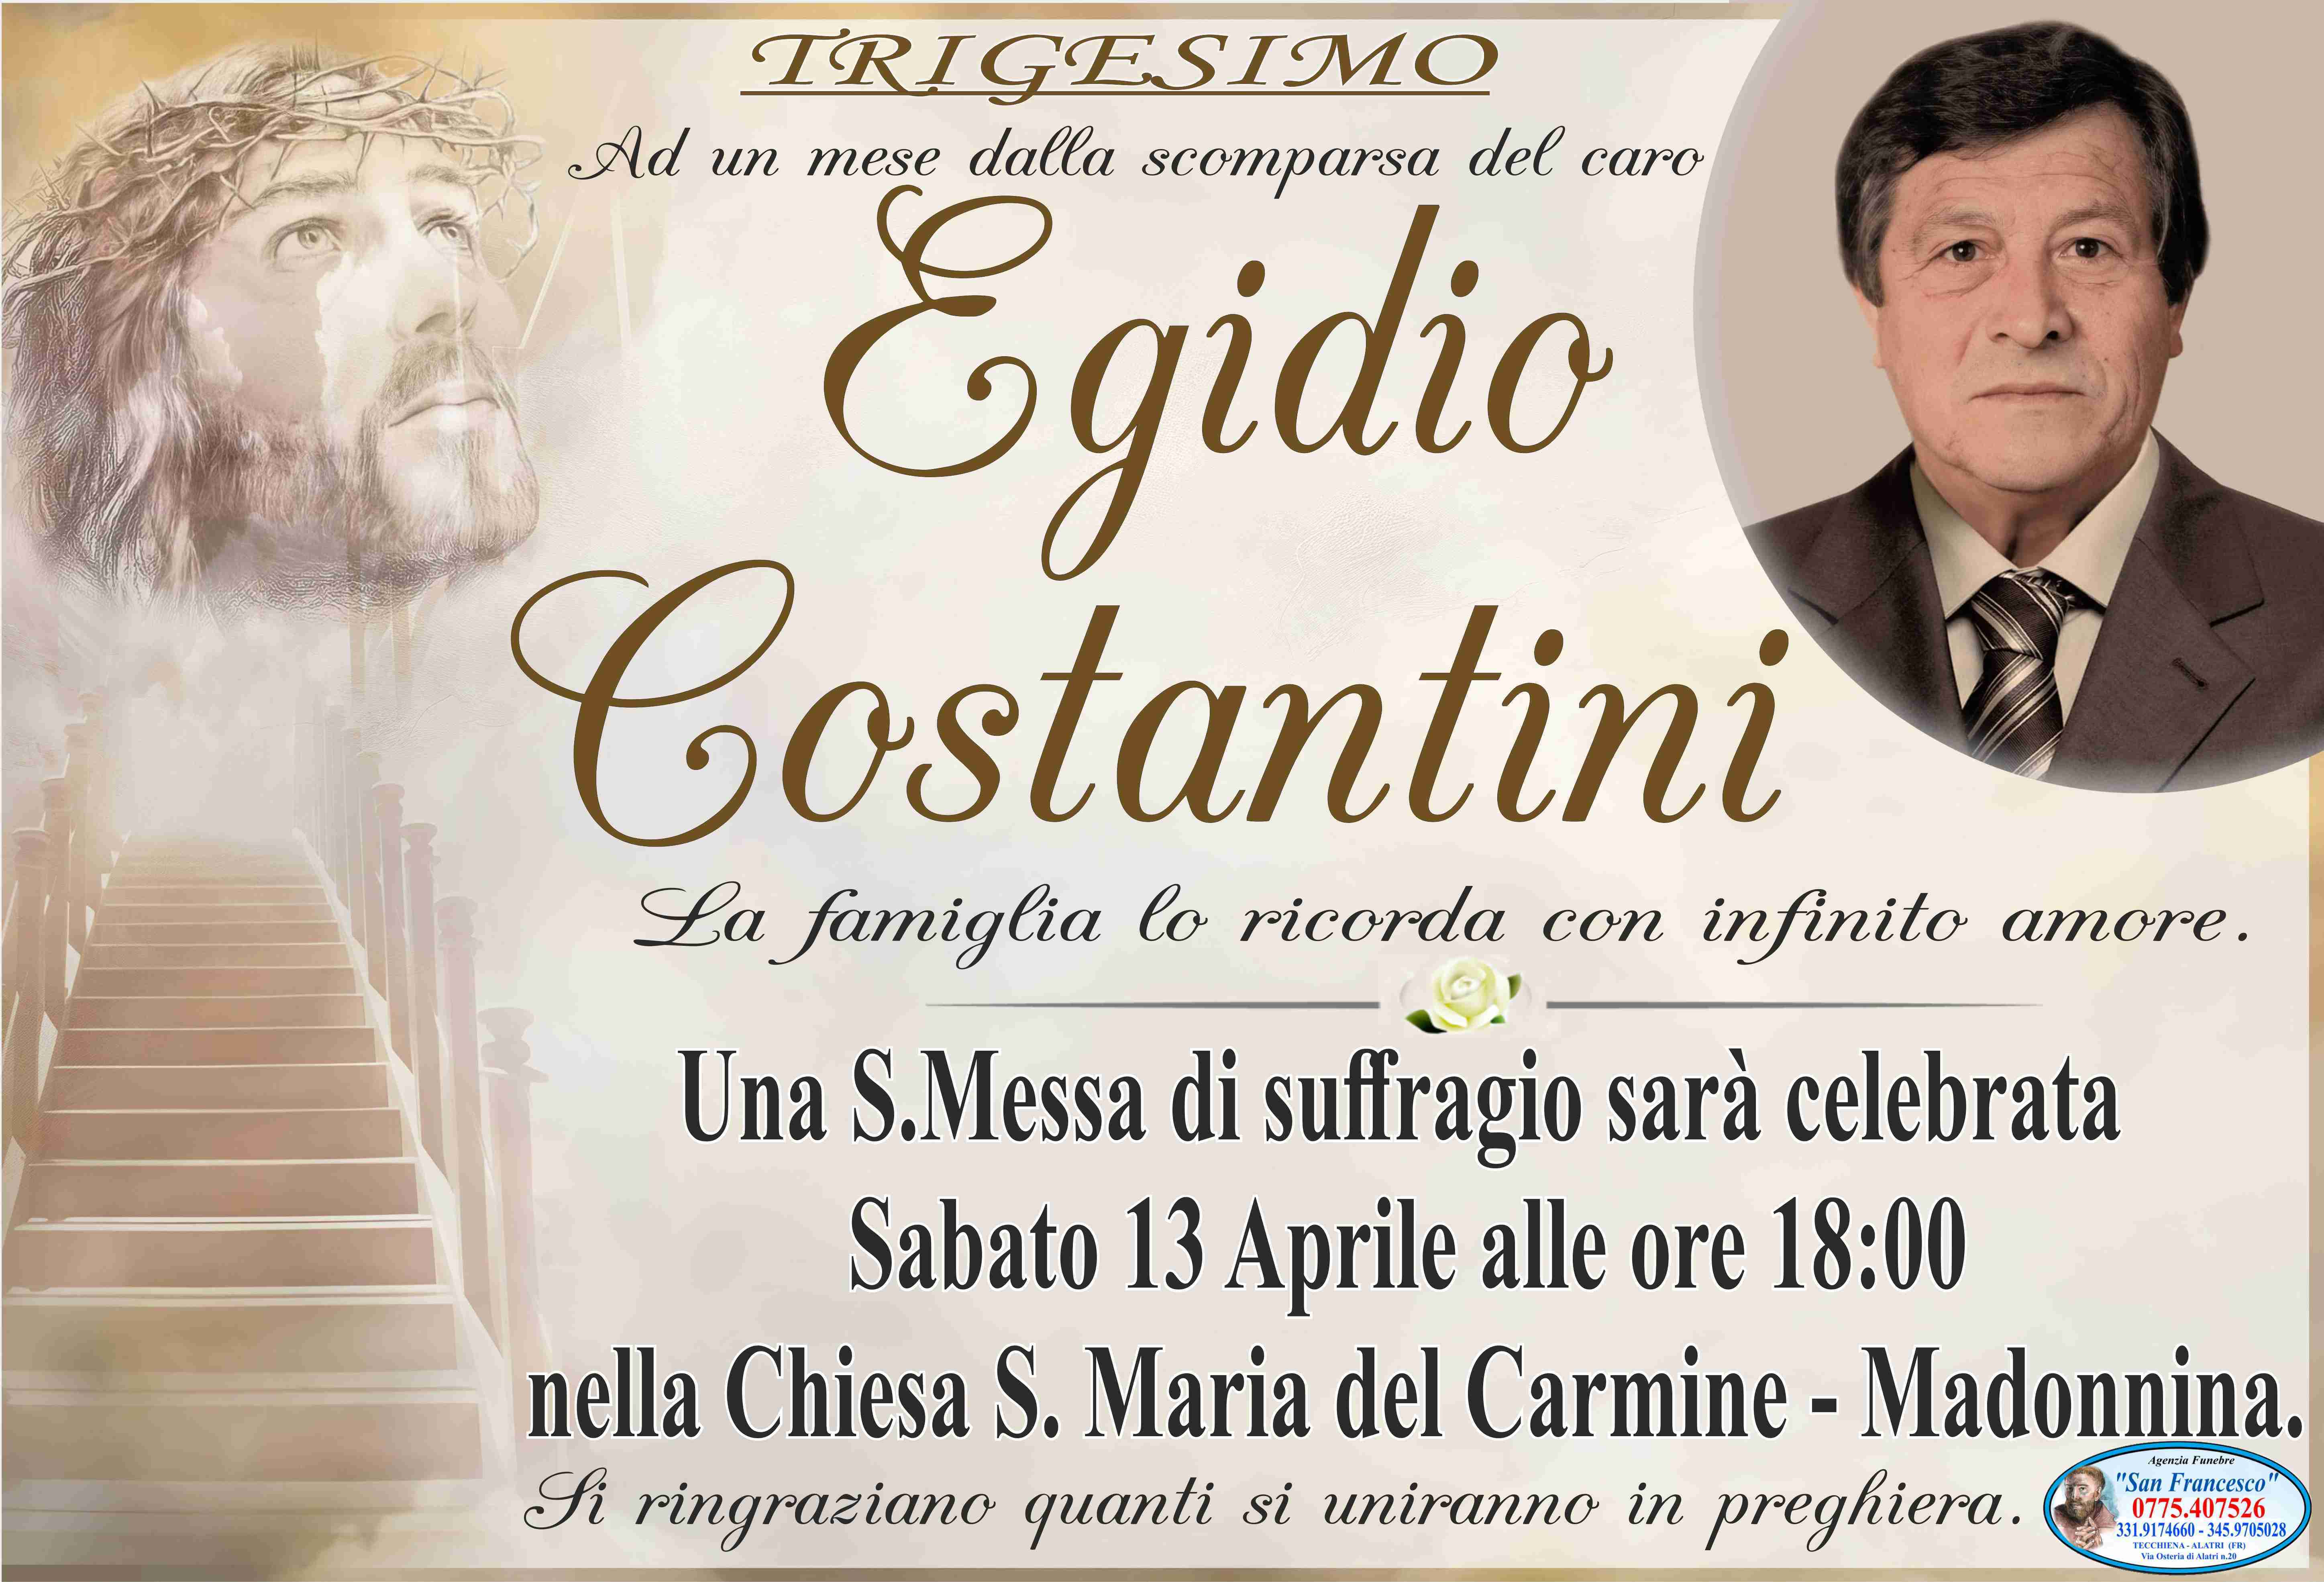 Egidio Costantini